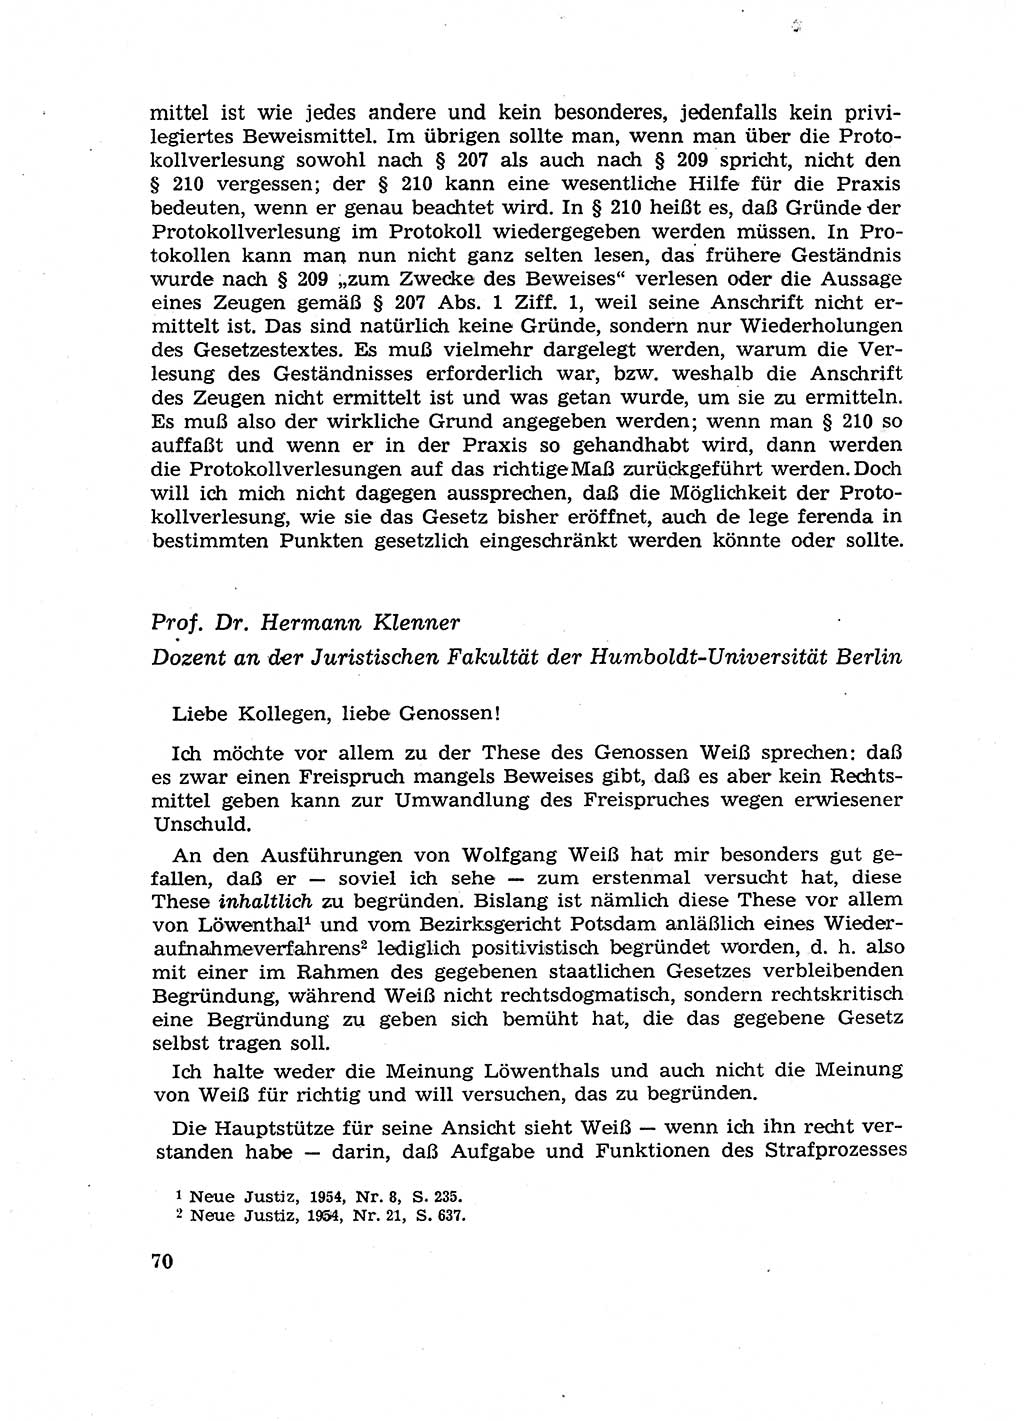 Fragen des Beweisrechts im Strafprozess [Deutsche Demokratische Republik (DDR)] 1956, Seite 70 (Fr. BeweisR. Str.-Proz. DDR 1956, S. 70)